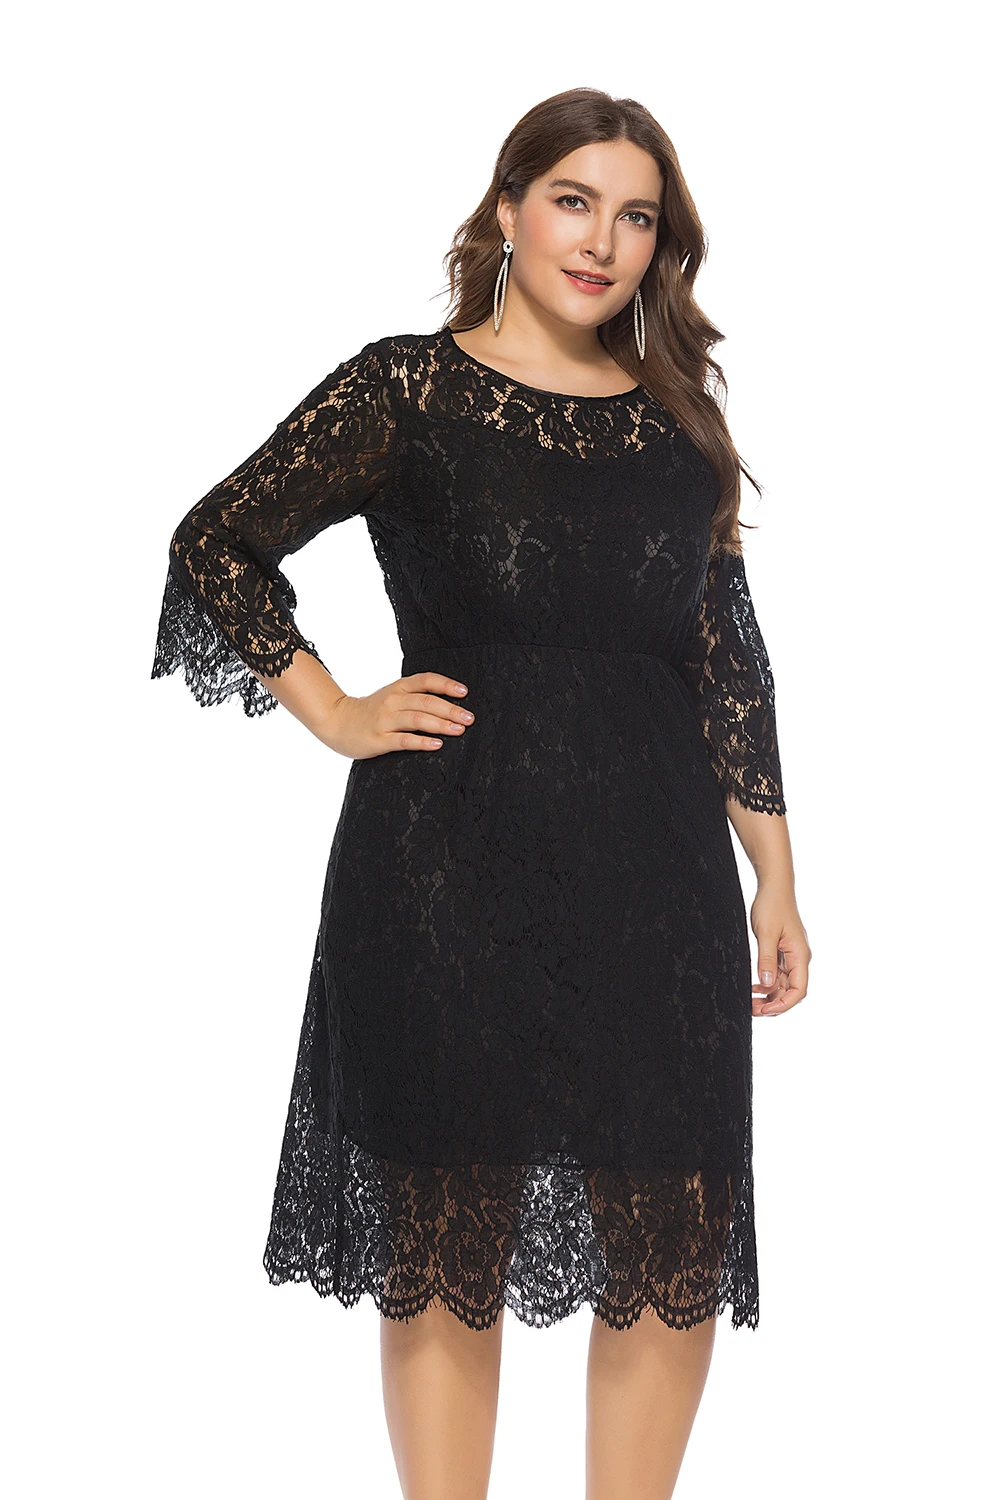 MisShow черное коктейльное платье плюс размер 3/4 рукав короткое формальное вечернее платье дешевая длина до колена элегантные модные